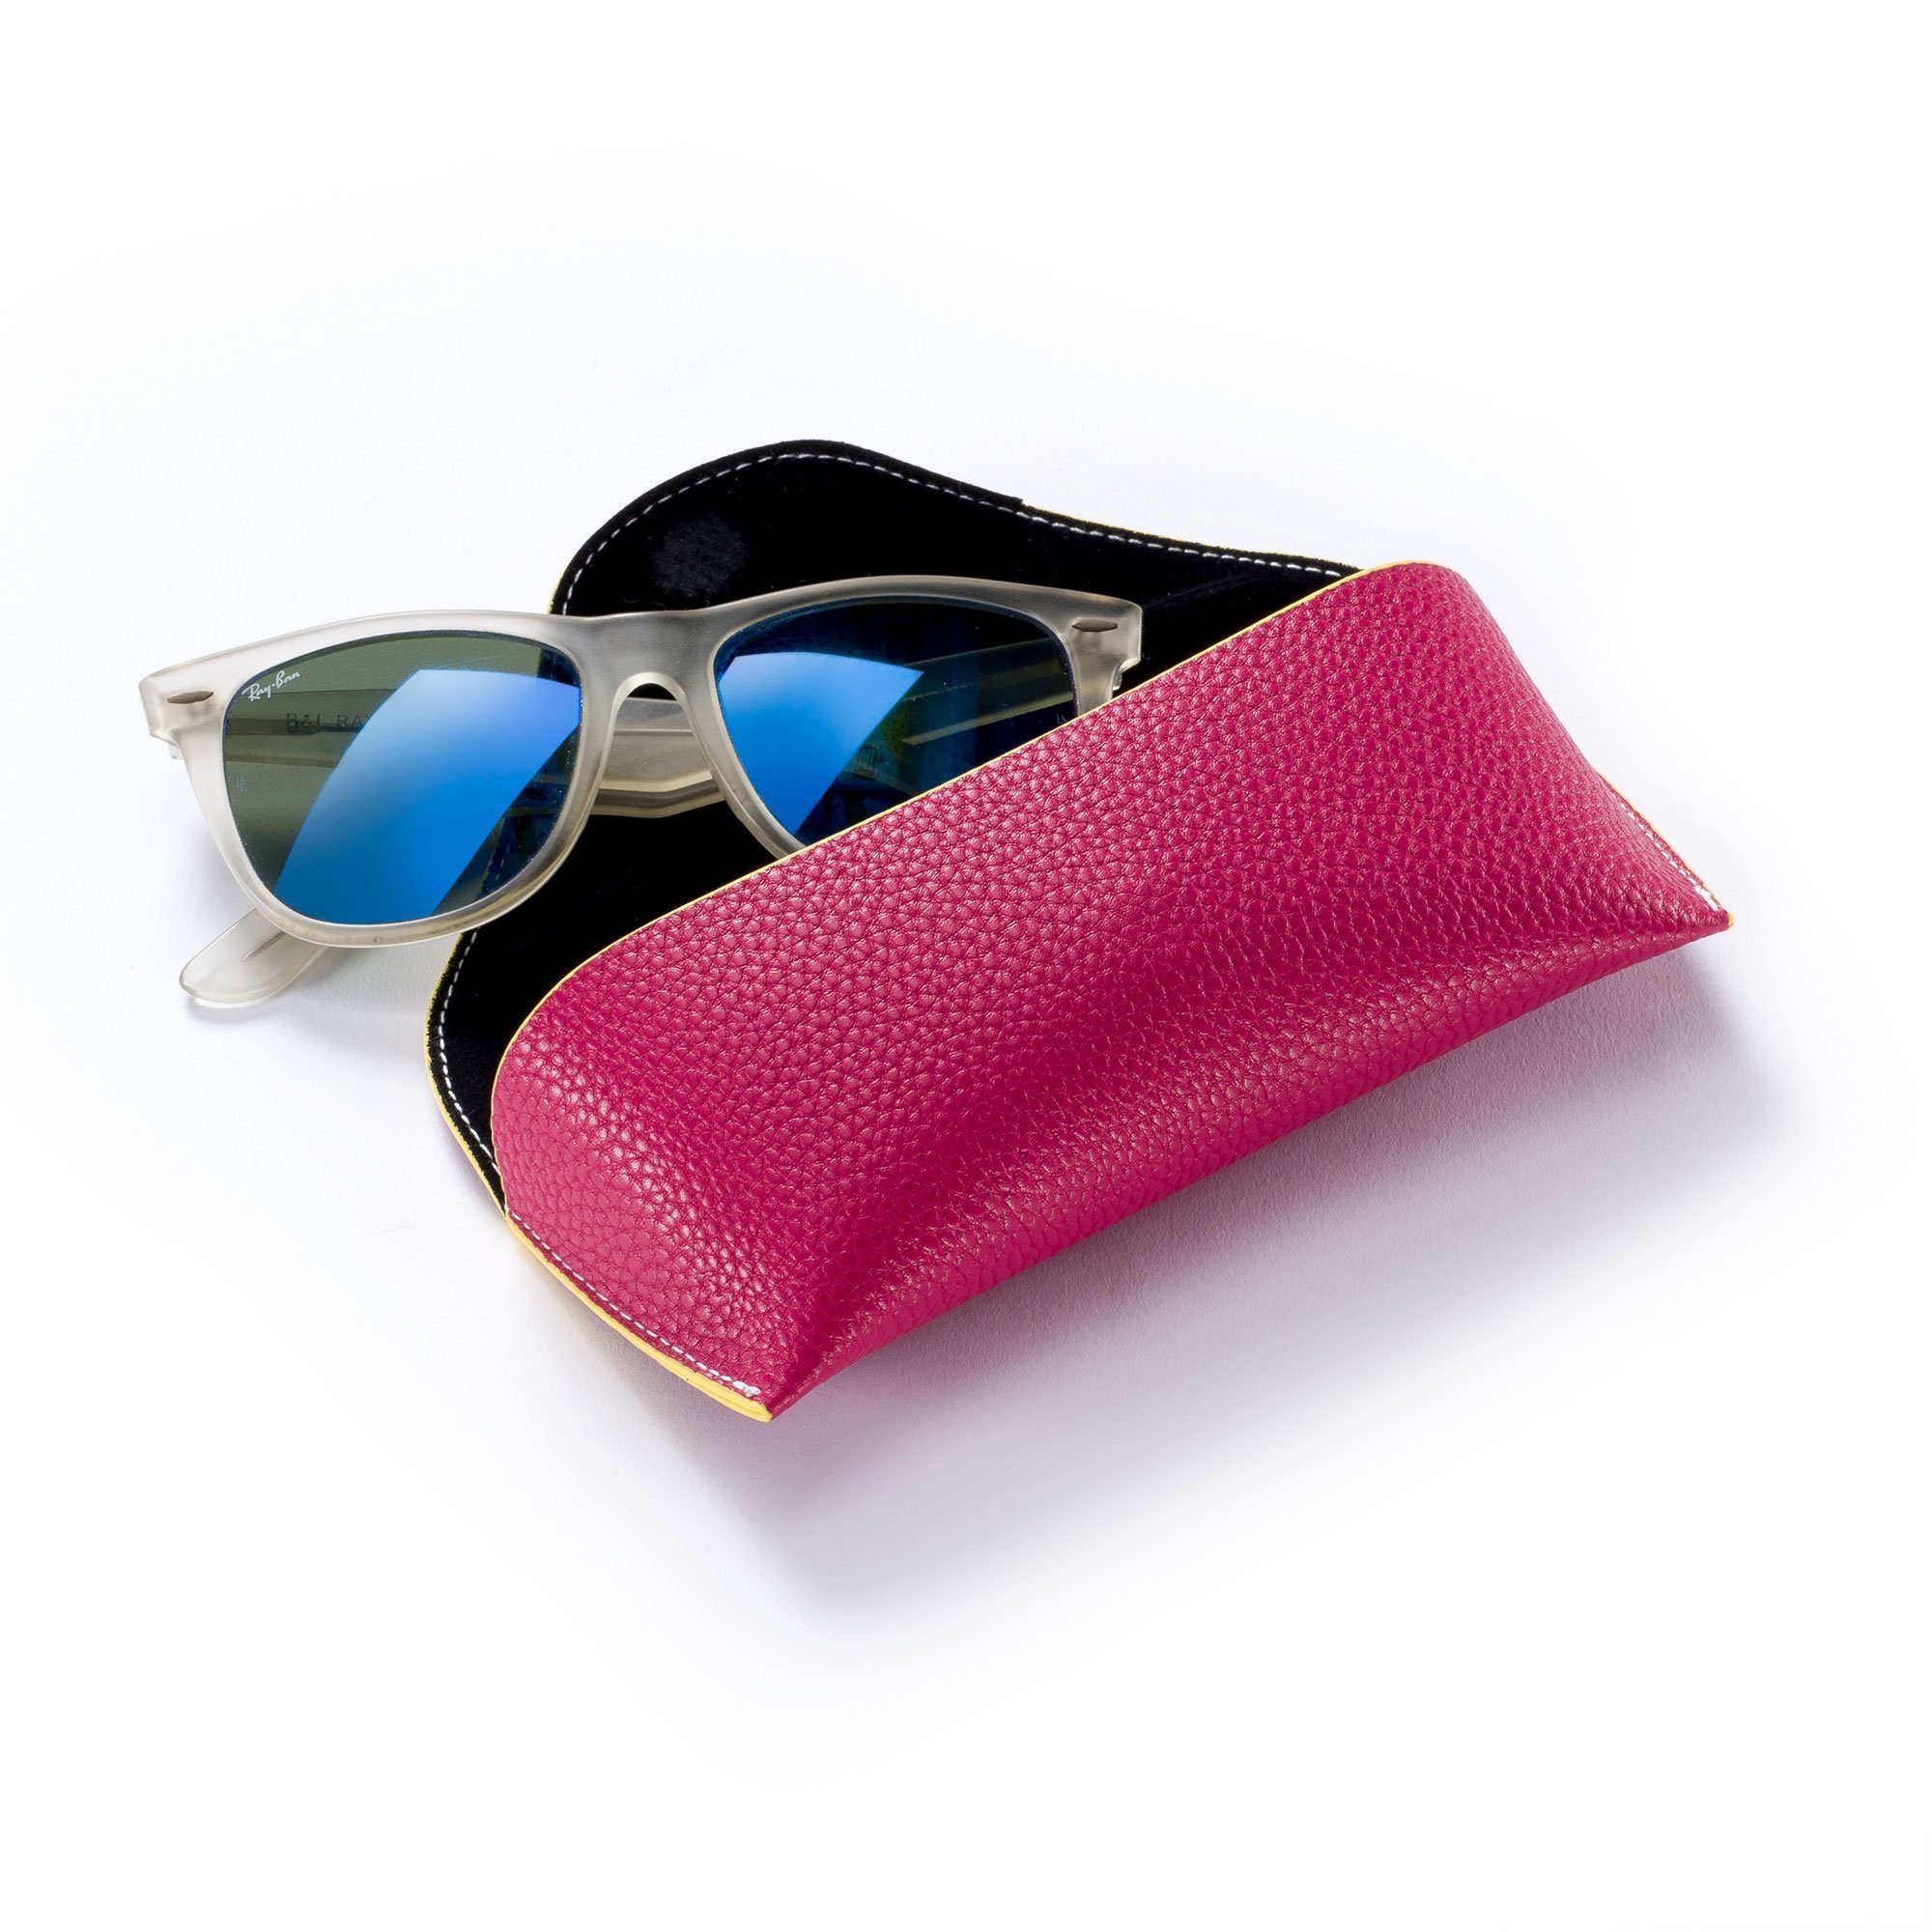 Damen Brillenetuis FEFI Brillenetui Sonnenbrillen Etui in schönen Farben, inklusive Mikrofasertuch